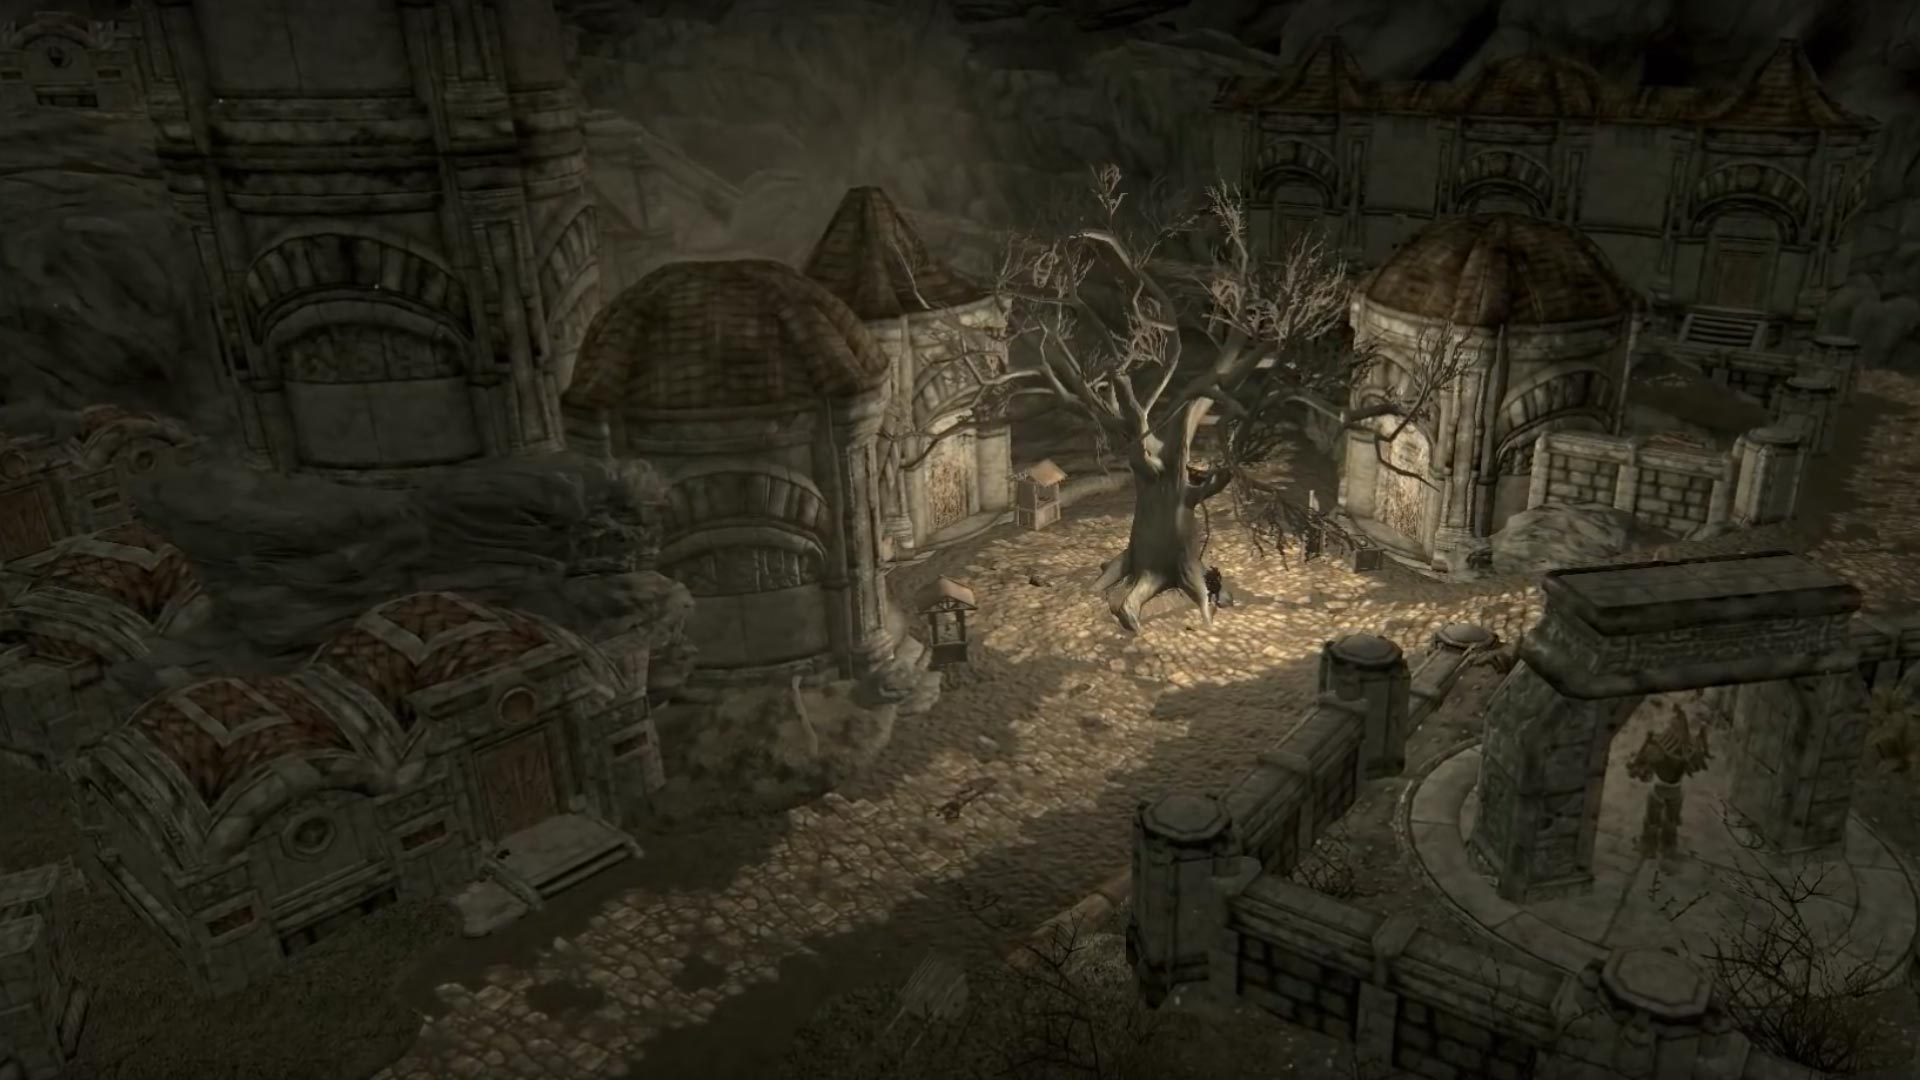 Skyrim: Special Edition The Forgotten City Mod